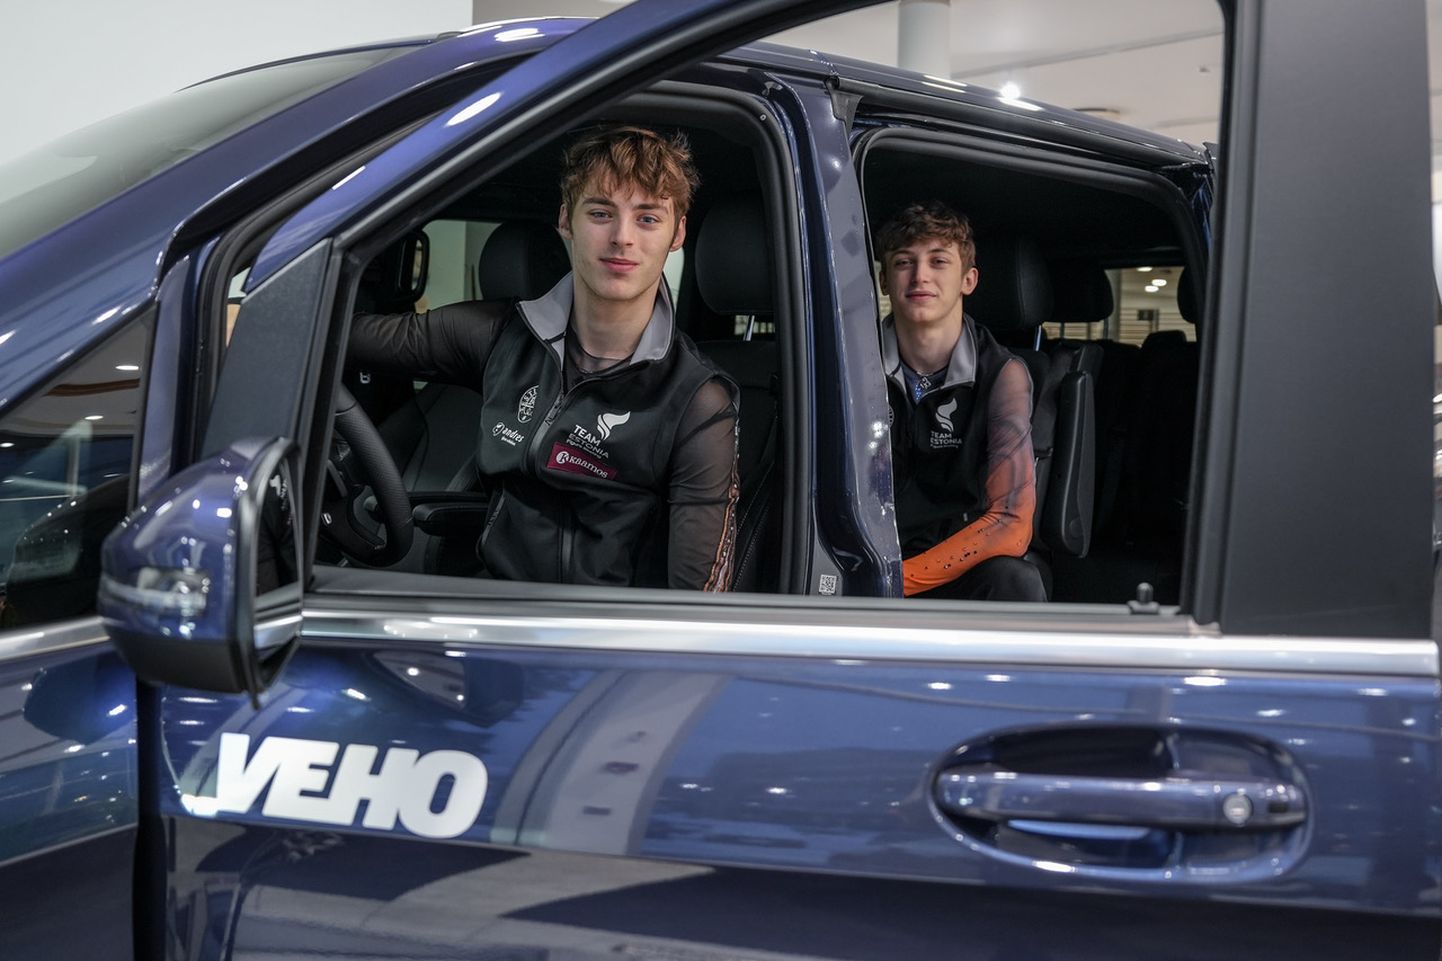 Михаил и Александр Селевко отправились на чемпионат Европы по фигурному катанию на новехоньком автомобиле премиум-класса.